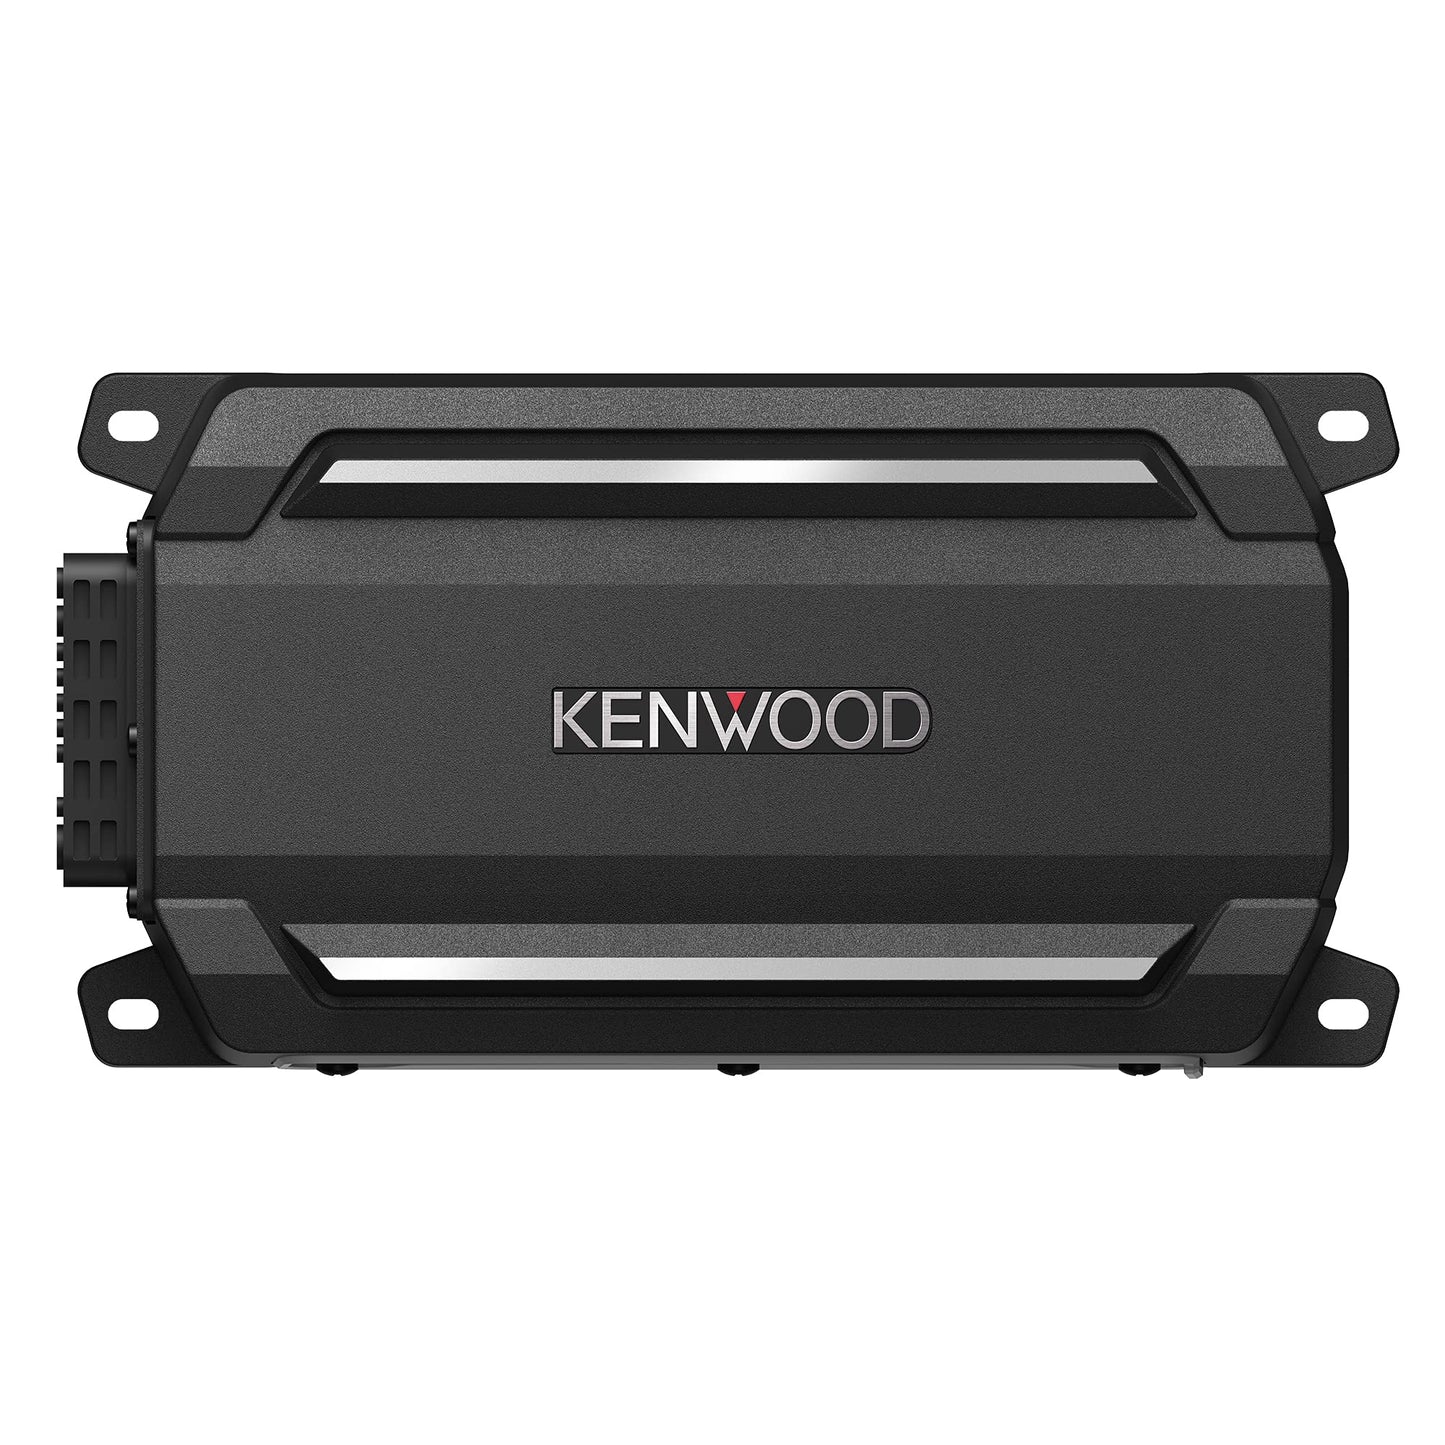 KENWOOD KAC-M5014 4-Channel Digital Amplifier 600W Car, Boat, UTV, Waterproof